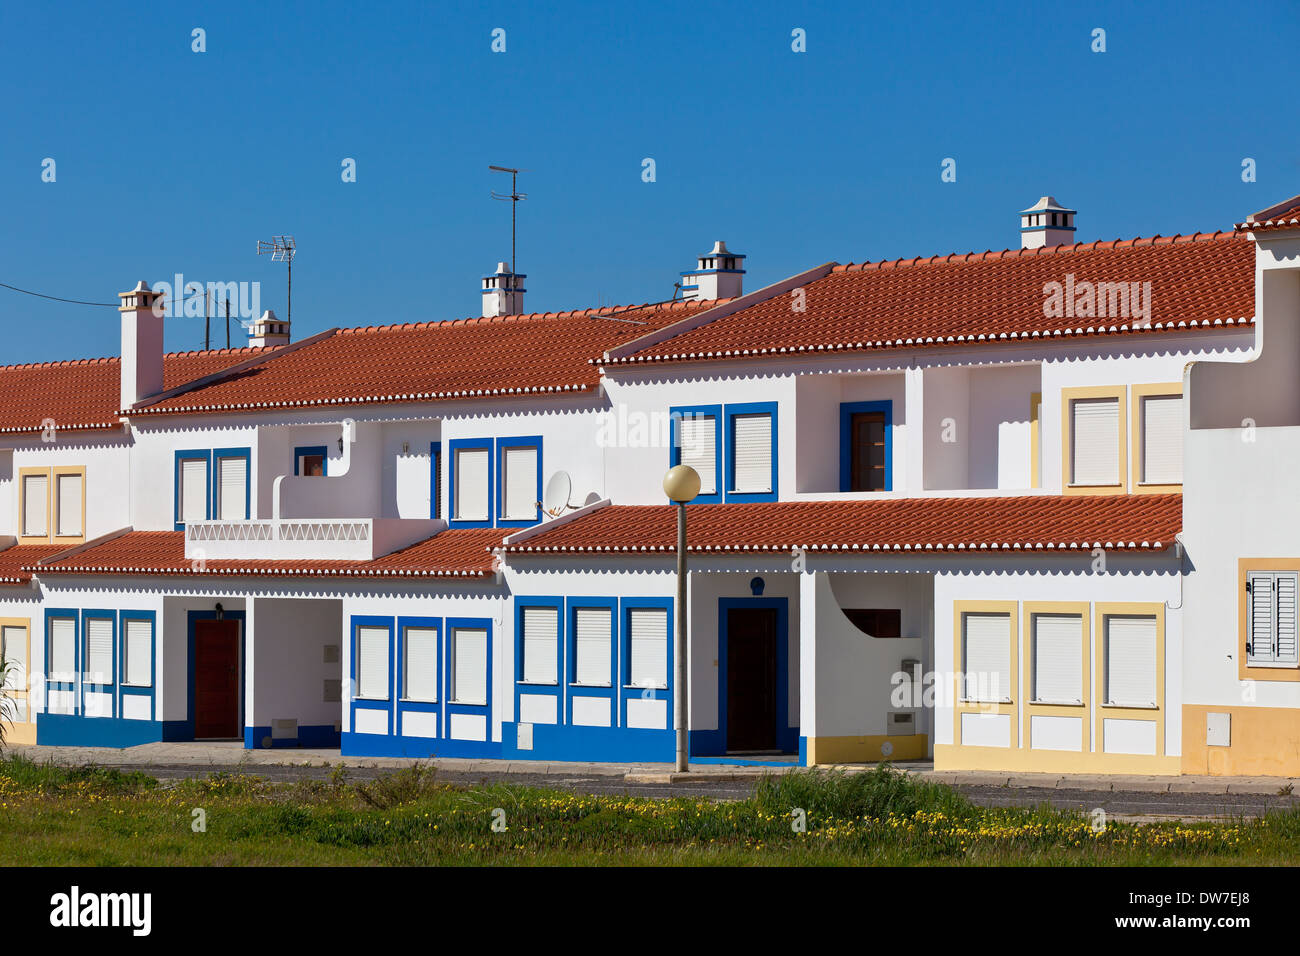 Méconnaissable Maison d'habitation à Algarve, Portugal. Ciel bleu en arrière-plan Banque D'Images